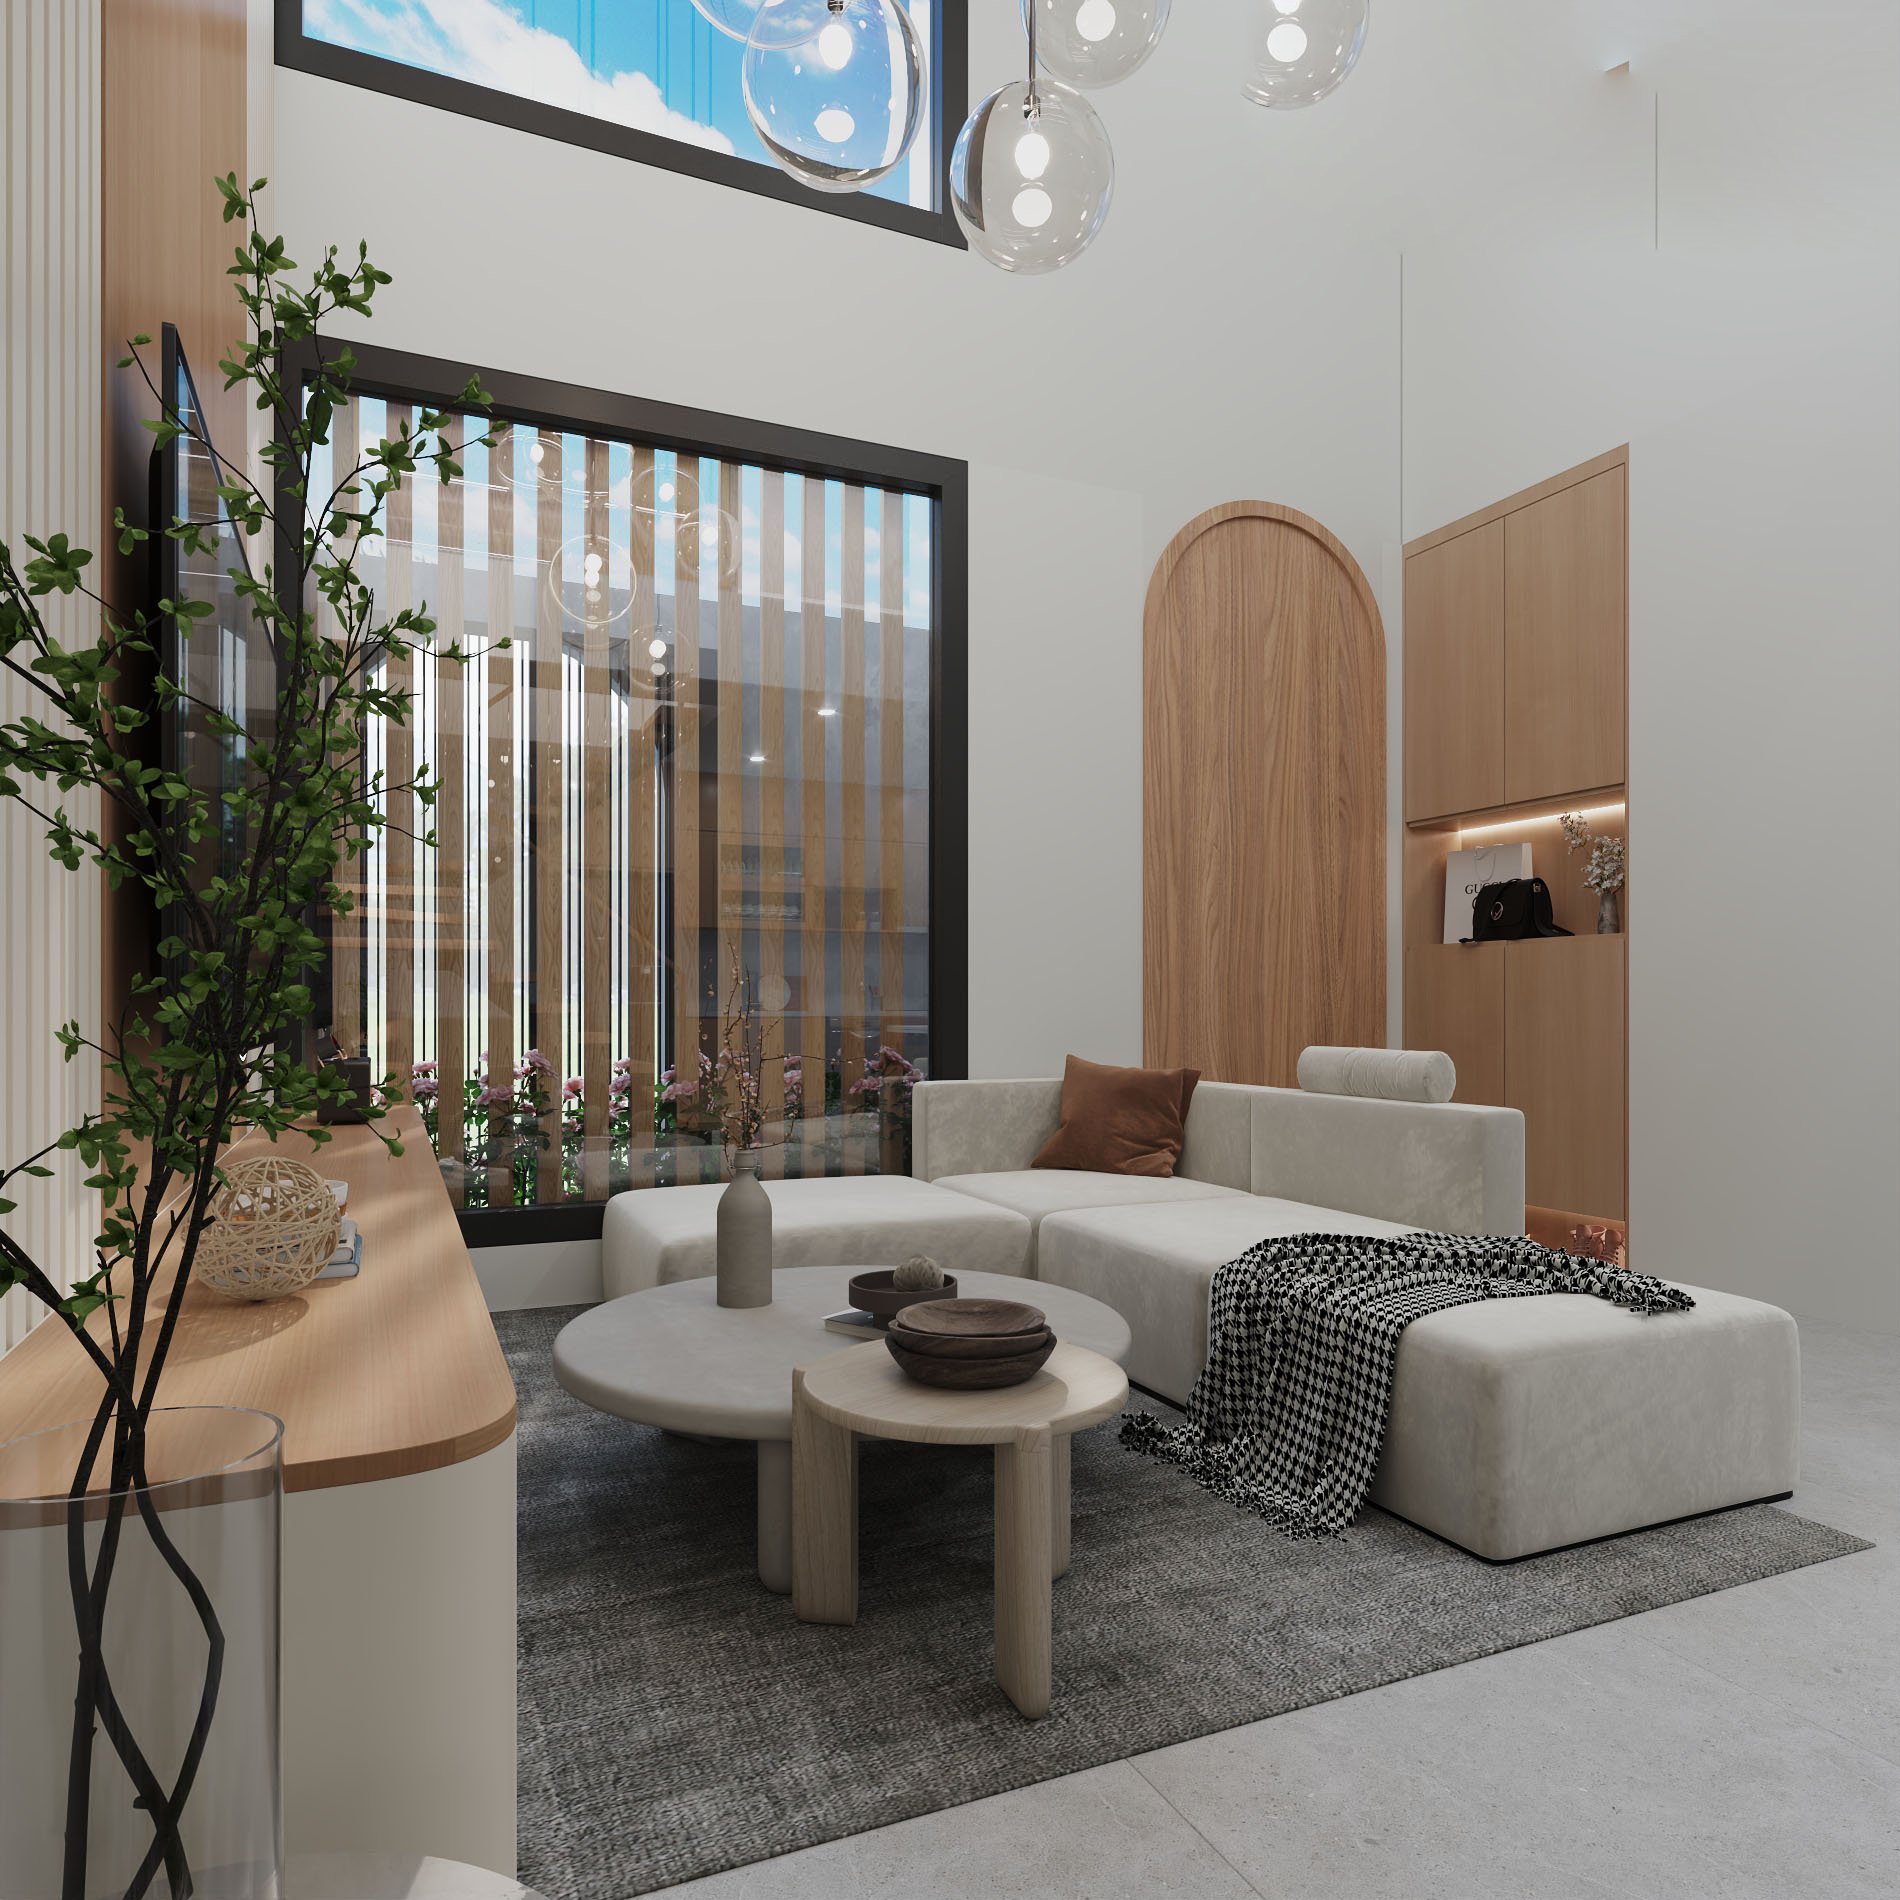 Không gian phòng khách cho thiết kế nội thất nhà ống 2 tầng hiện đại